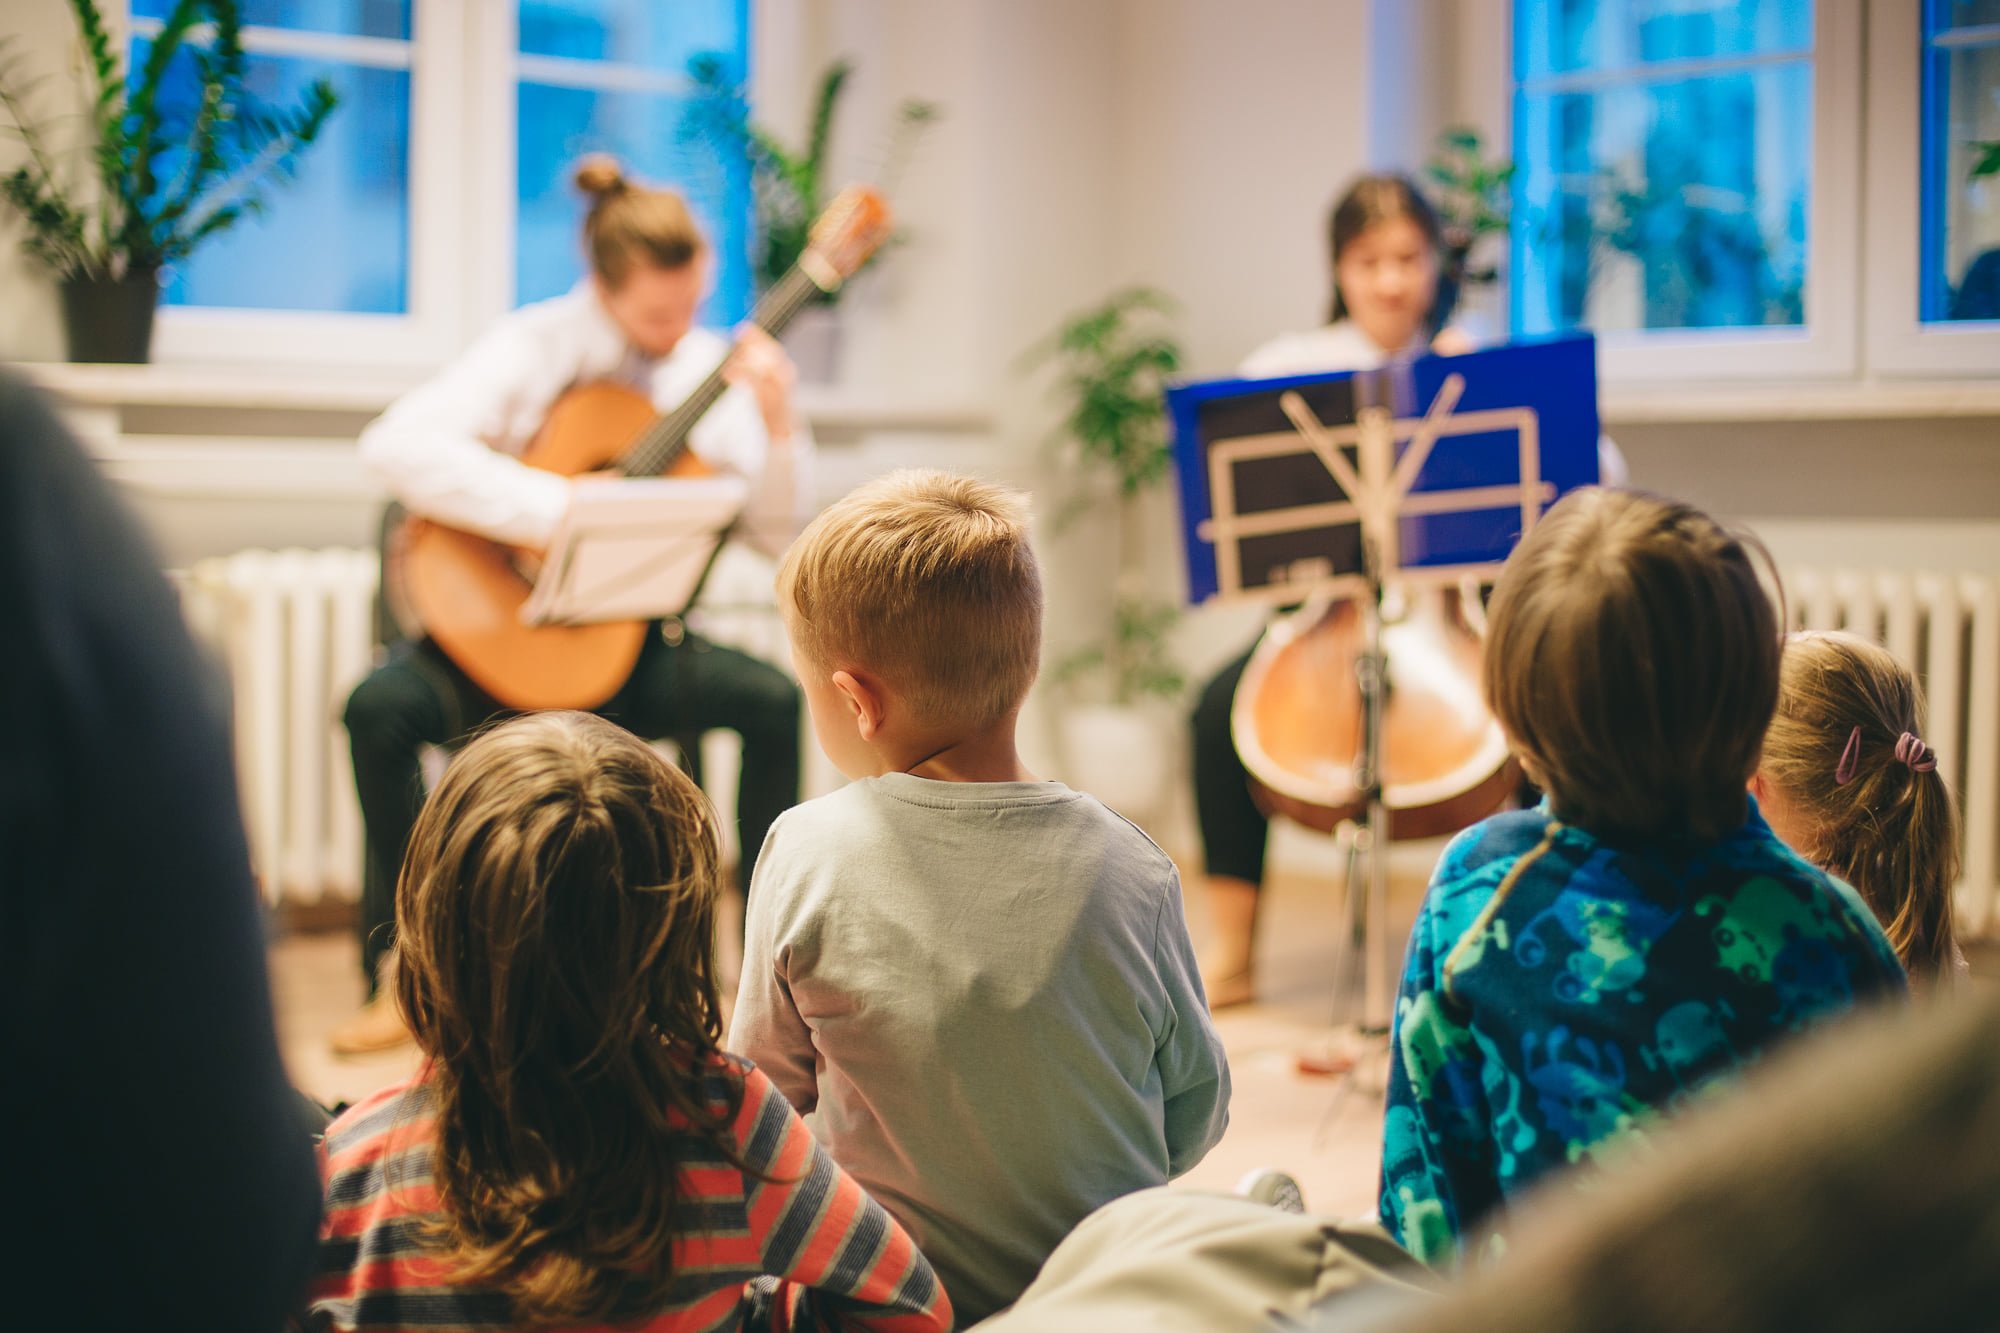 Na pierwszym planie zdjęcia widoczne dzieciaki zasłuchane w koncercie. W tle siedzą dwie osoby, grają na gitarze oraz wiolonczeli.